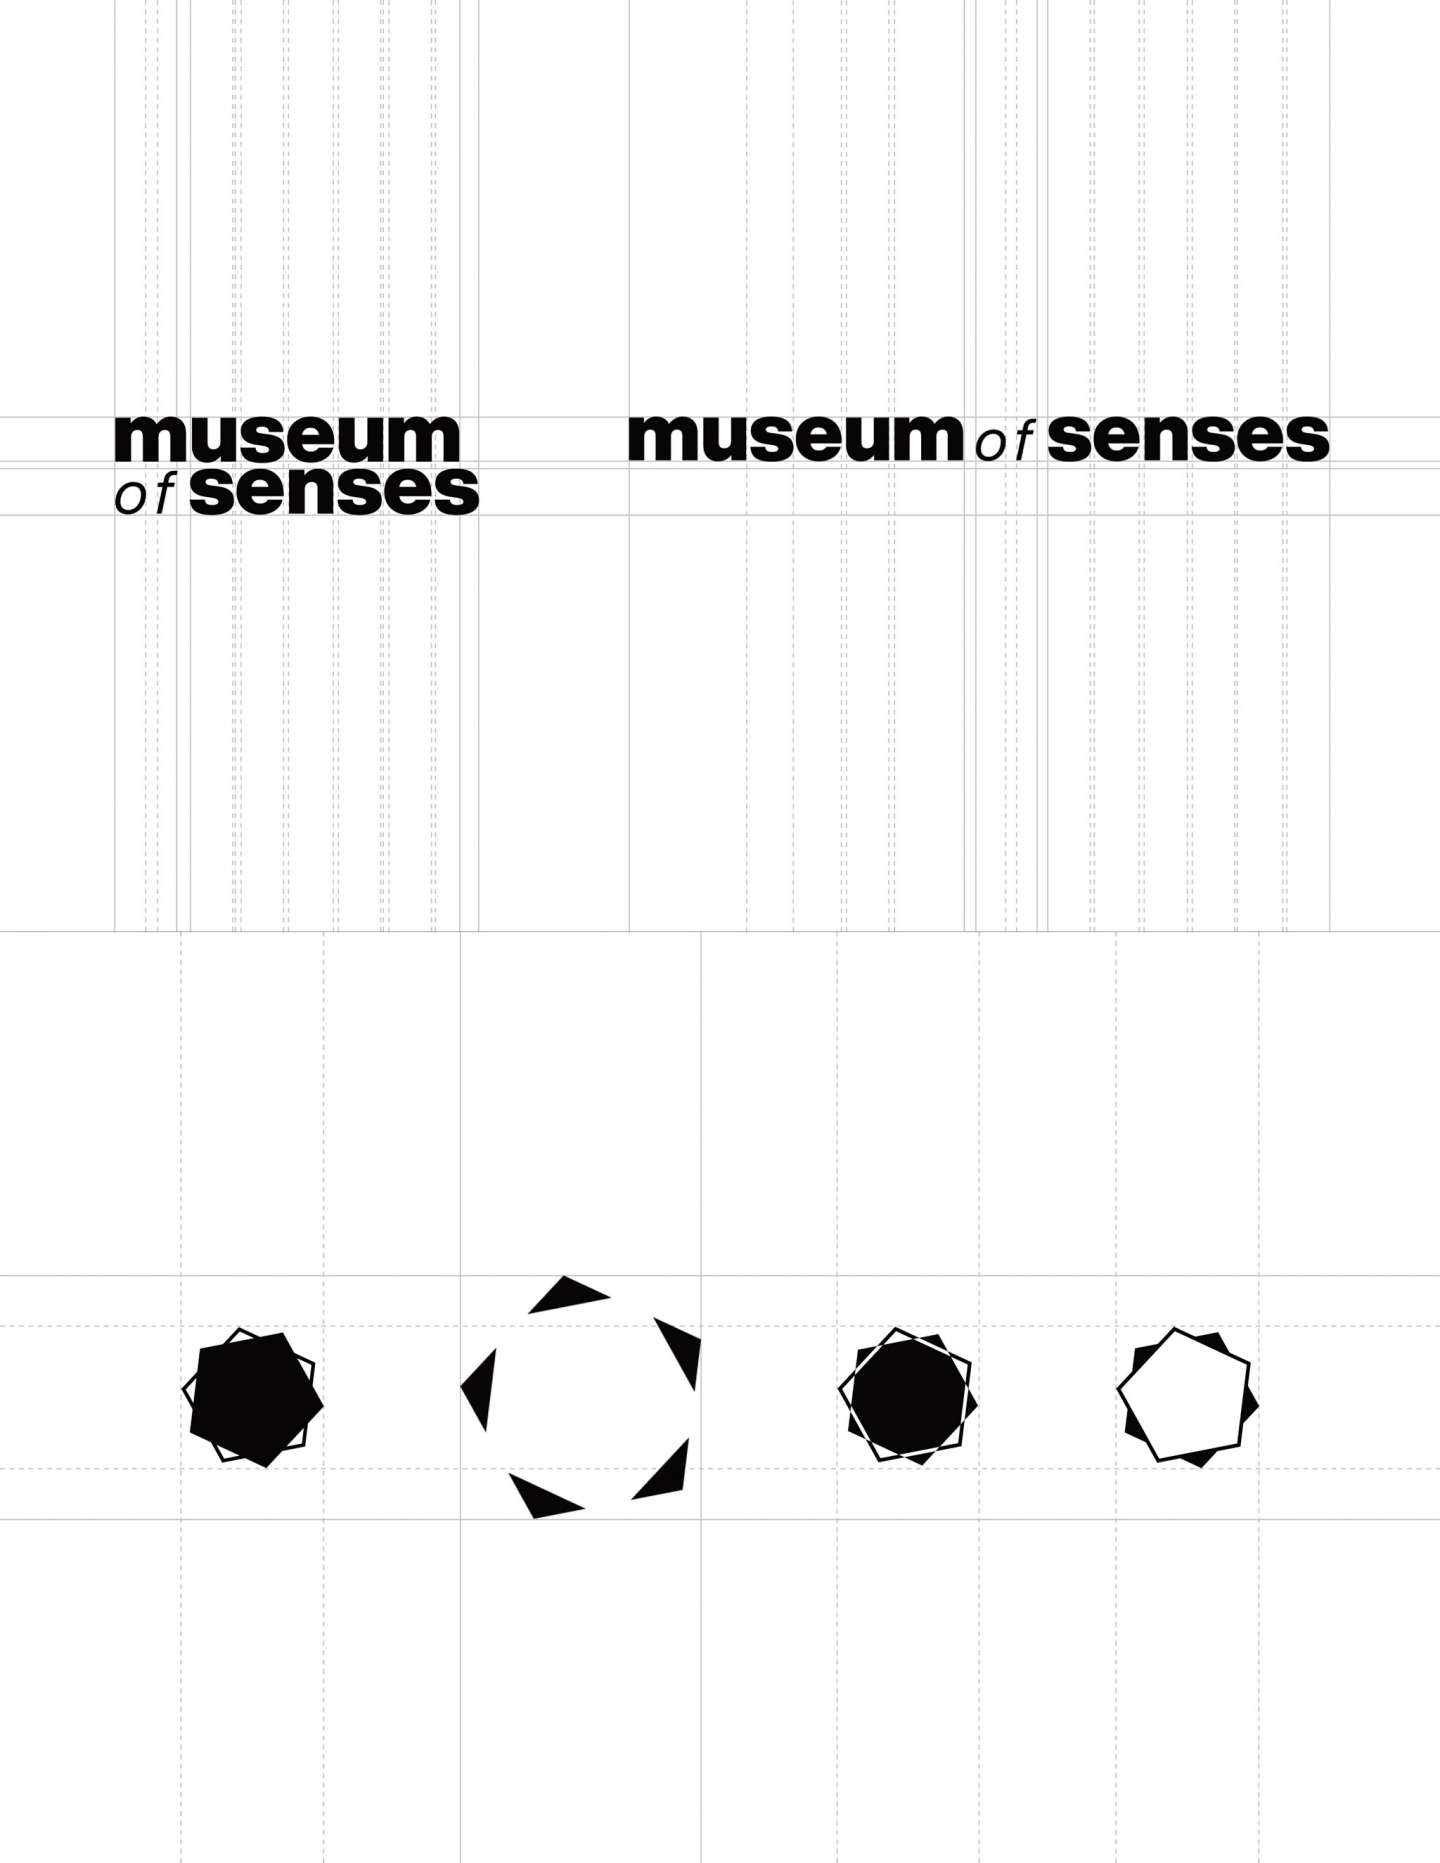 The Museum of Senses